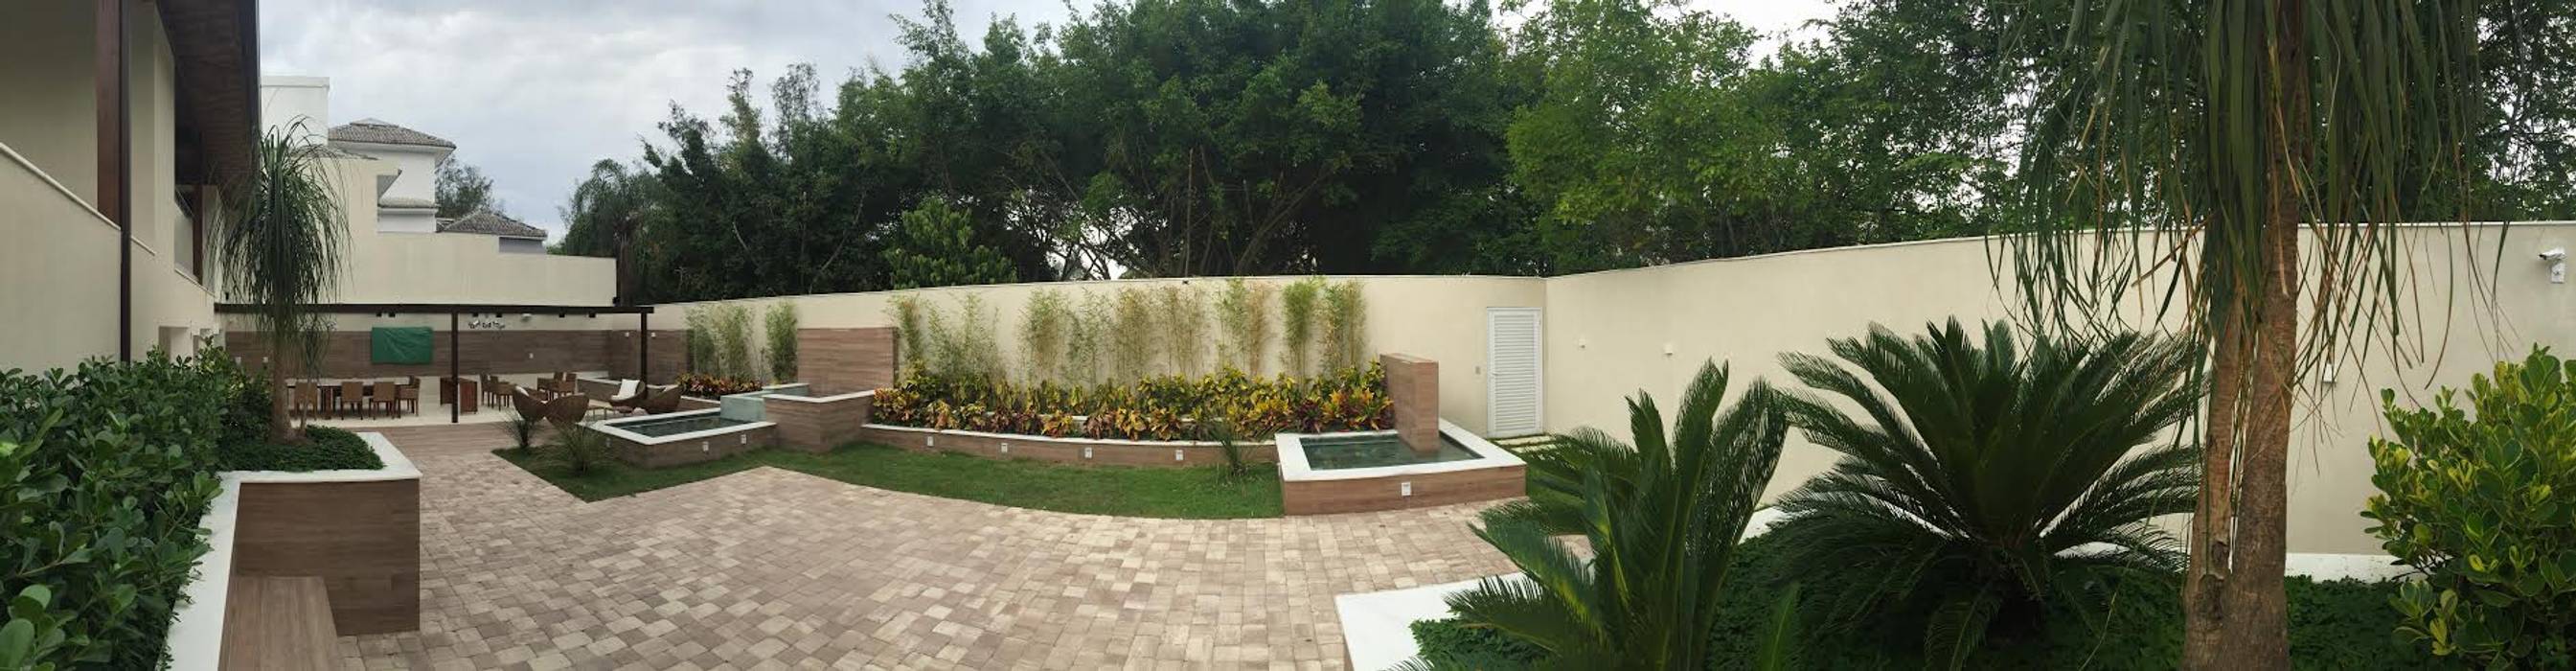 Casa na barra da tijuca- Rio de Janeiro, GEA Arquitetura GEA Arquitetura Jardins tropicais